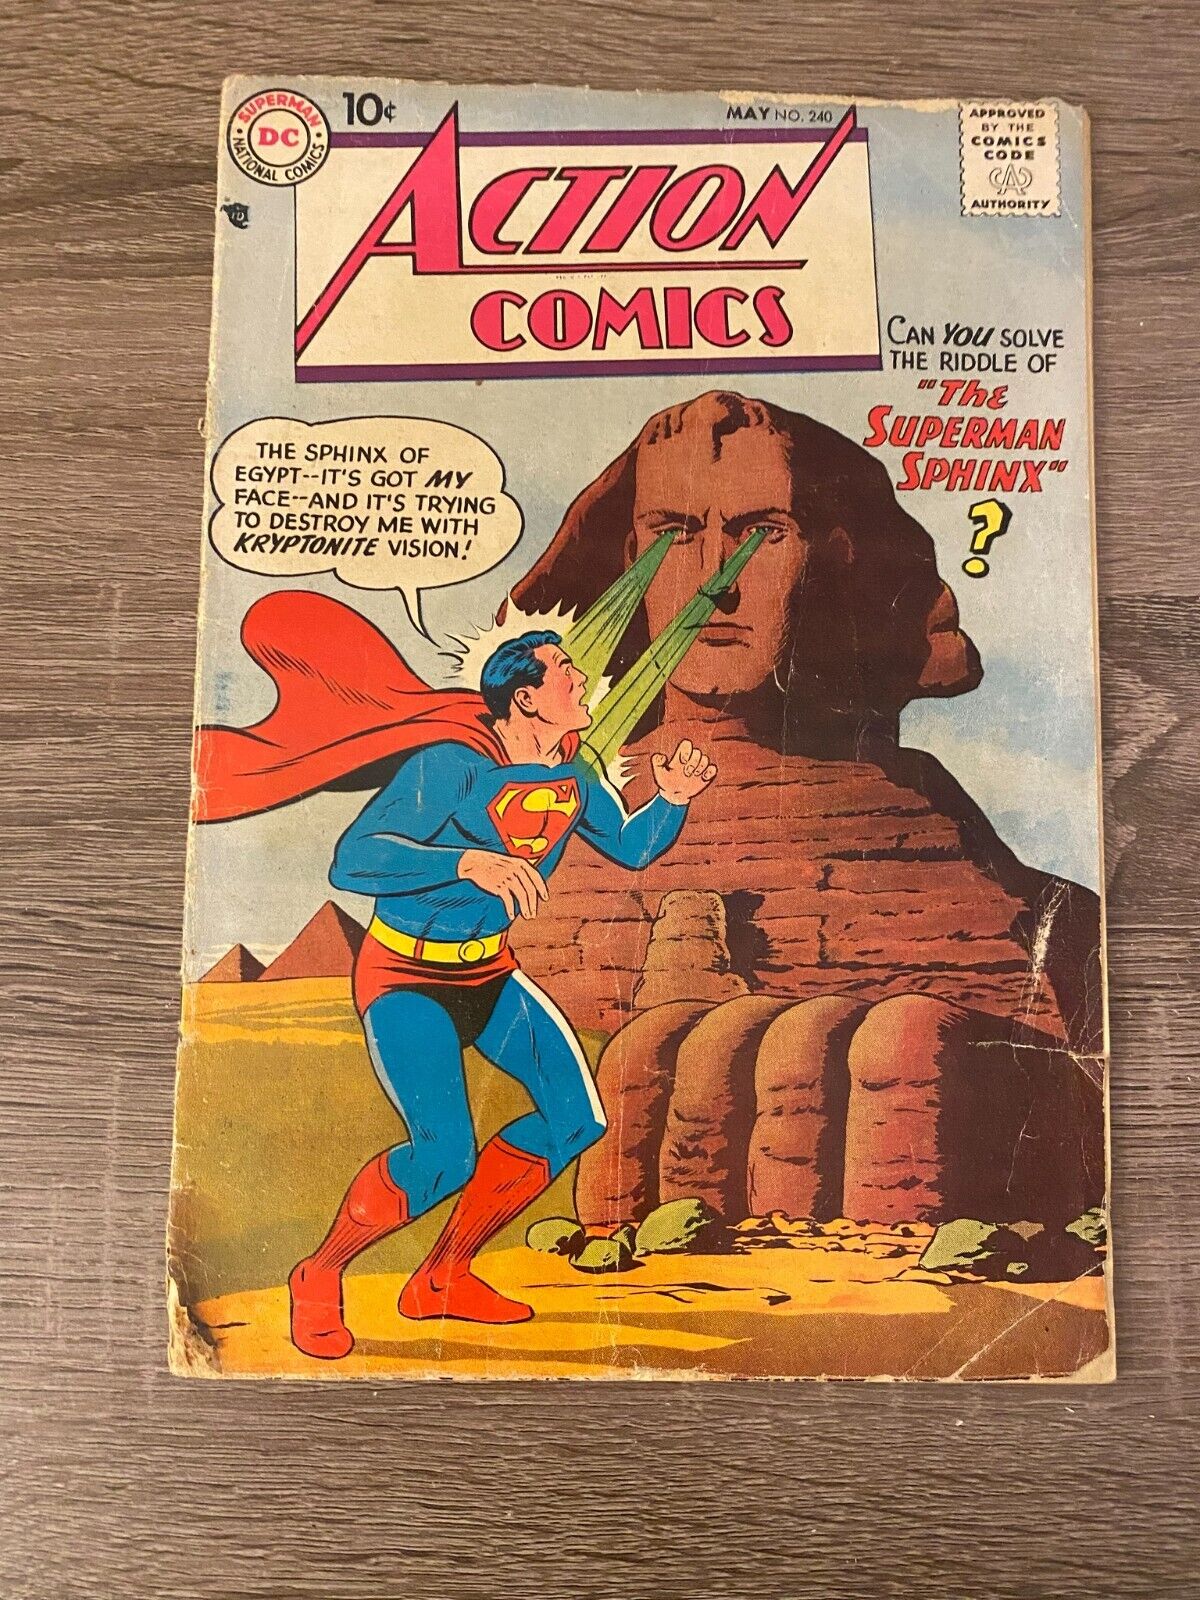 ACTION COMICS #240 MAY 1958 DC COMICS SILVER AGE SUPERMAN LOIS LANE SWAN KAYE ad